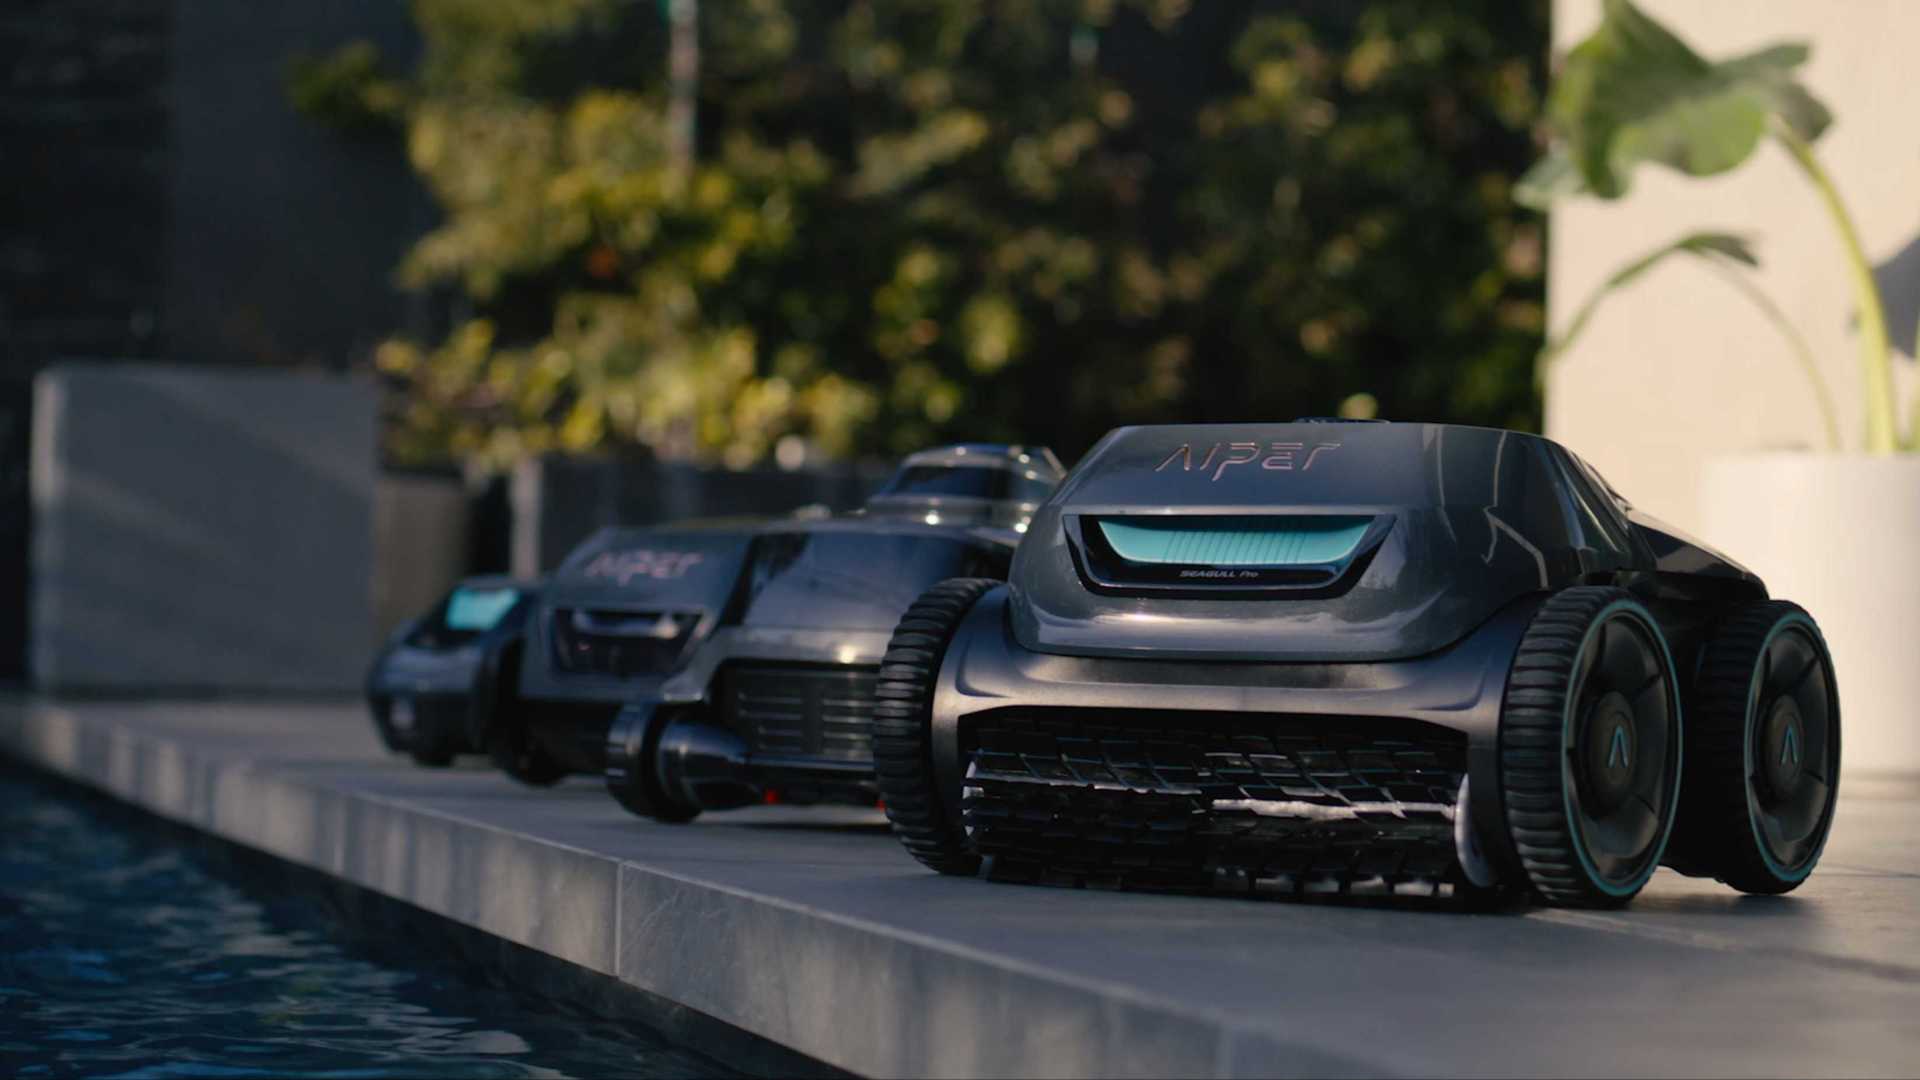 Aiper-世界上最好的无线泳池清洁机器人-品牌官方宣传视频